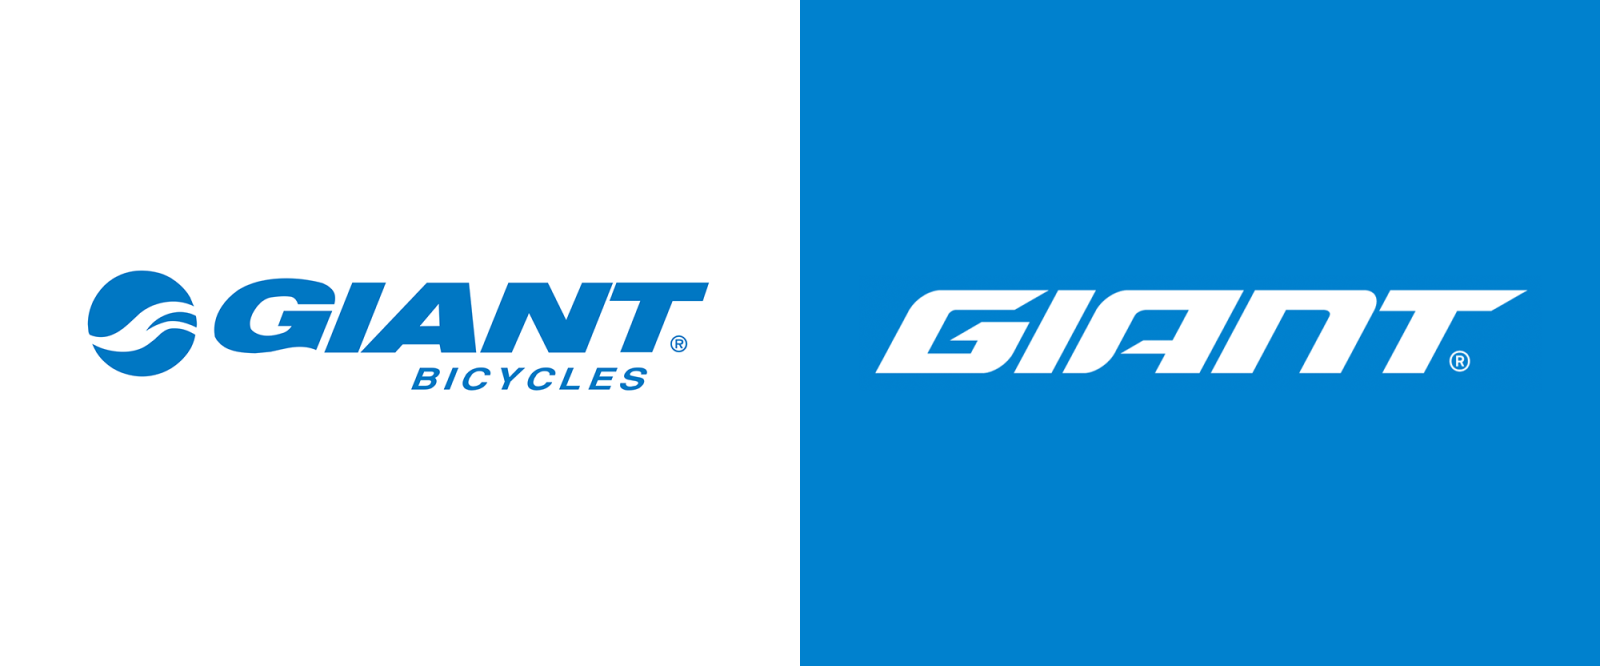 Xe đạp Giant của nước nào sản xuất ? Có tốt không nên mua không ?